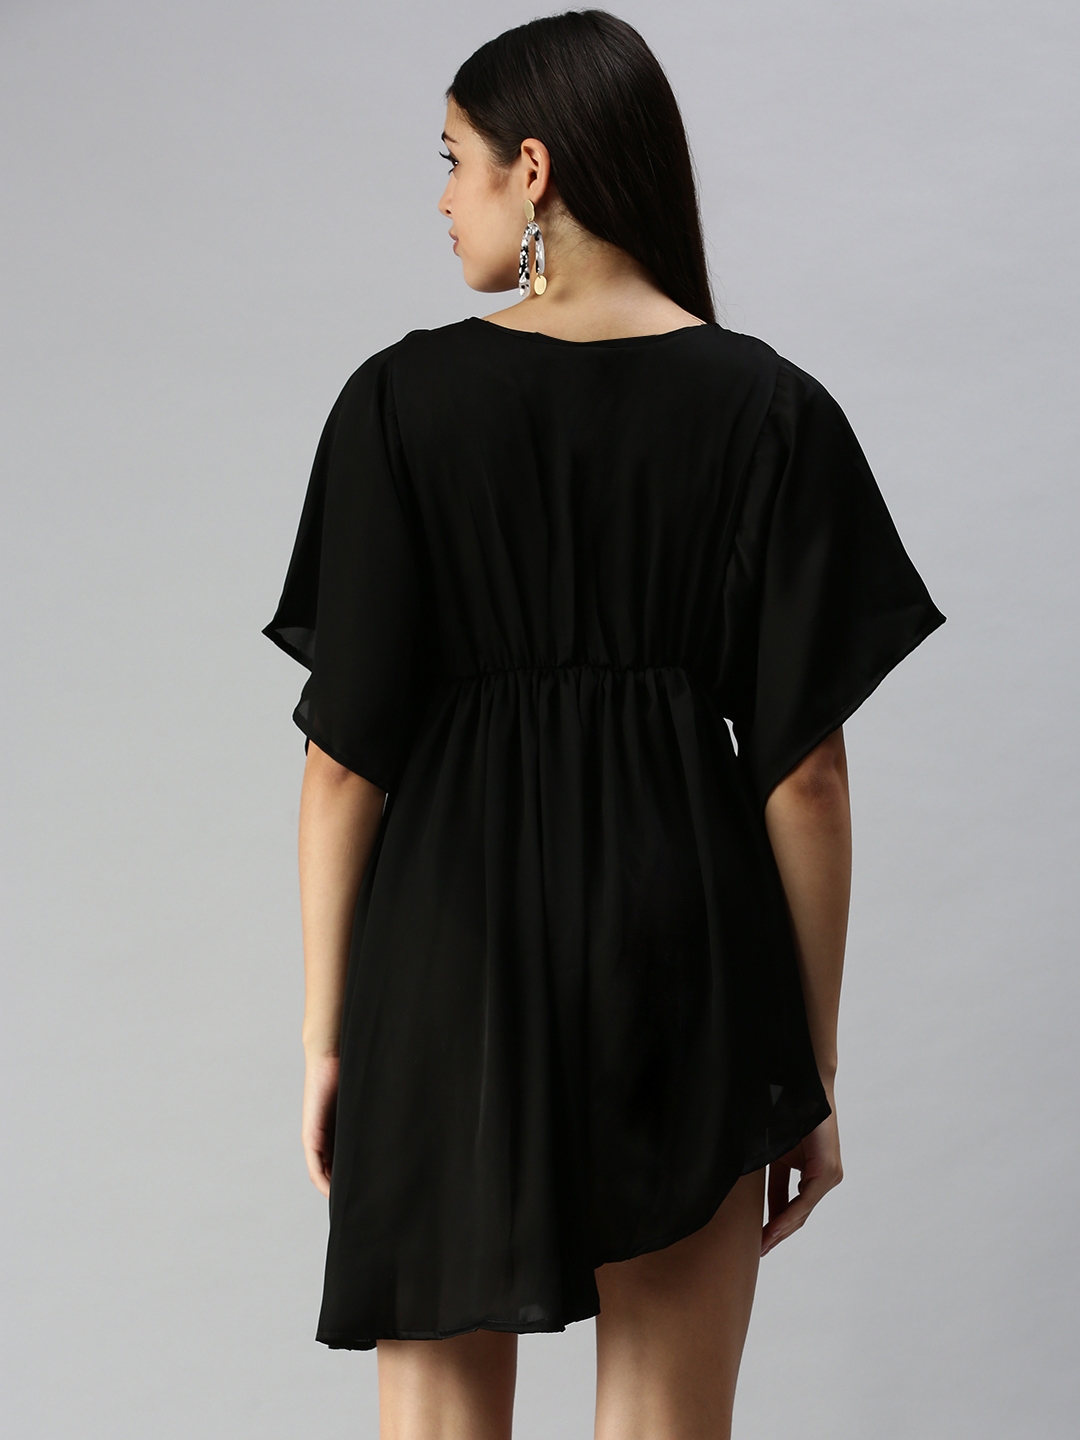 SHOWOFF Women's Black V-Neck Solid A-Line Dress